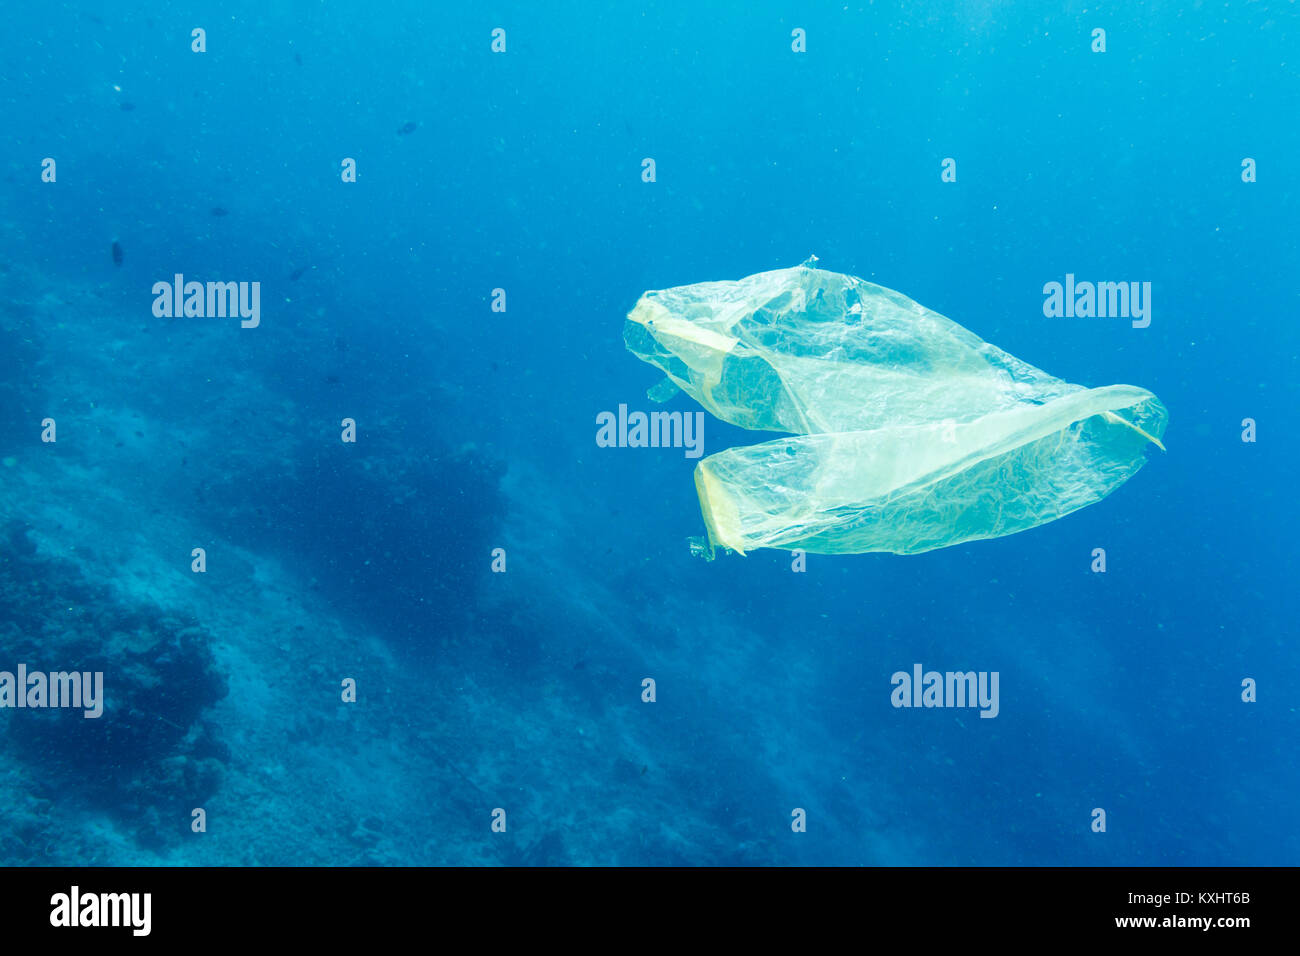 Un sac en plastique flotte dans la mer après avoir été jetés, Parc national marin de Bunaken, au nord de Sulawesi, Indonésie Banque D'Images